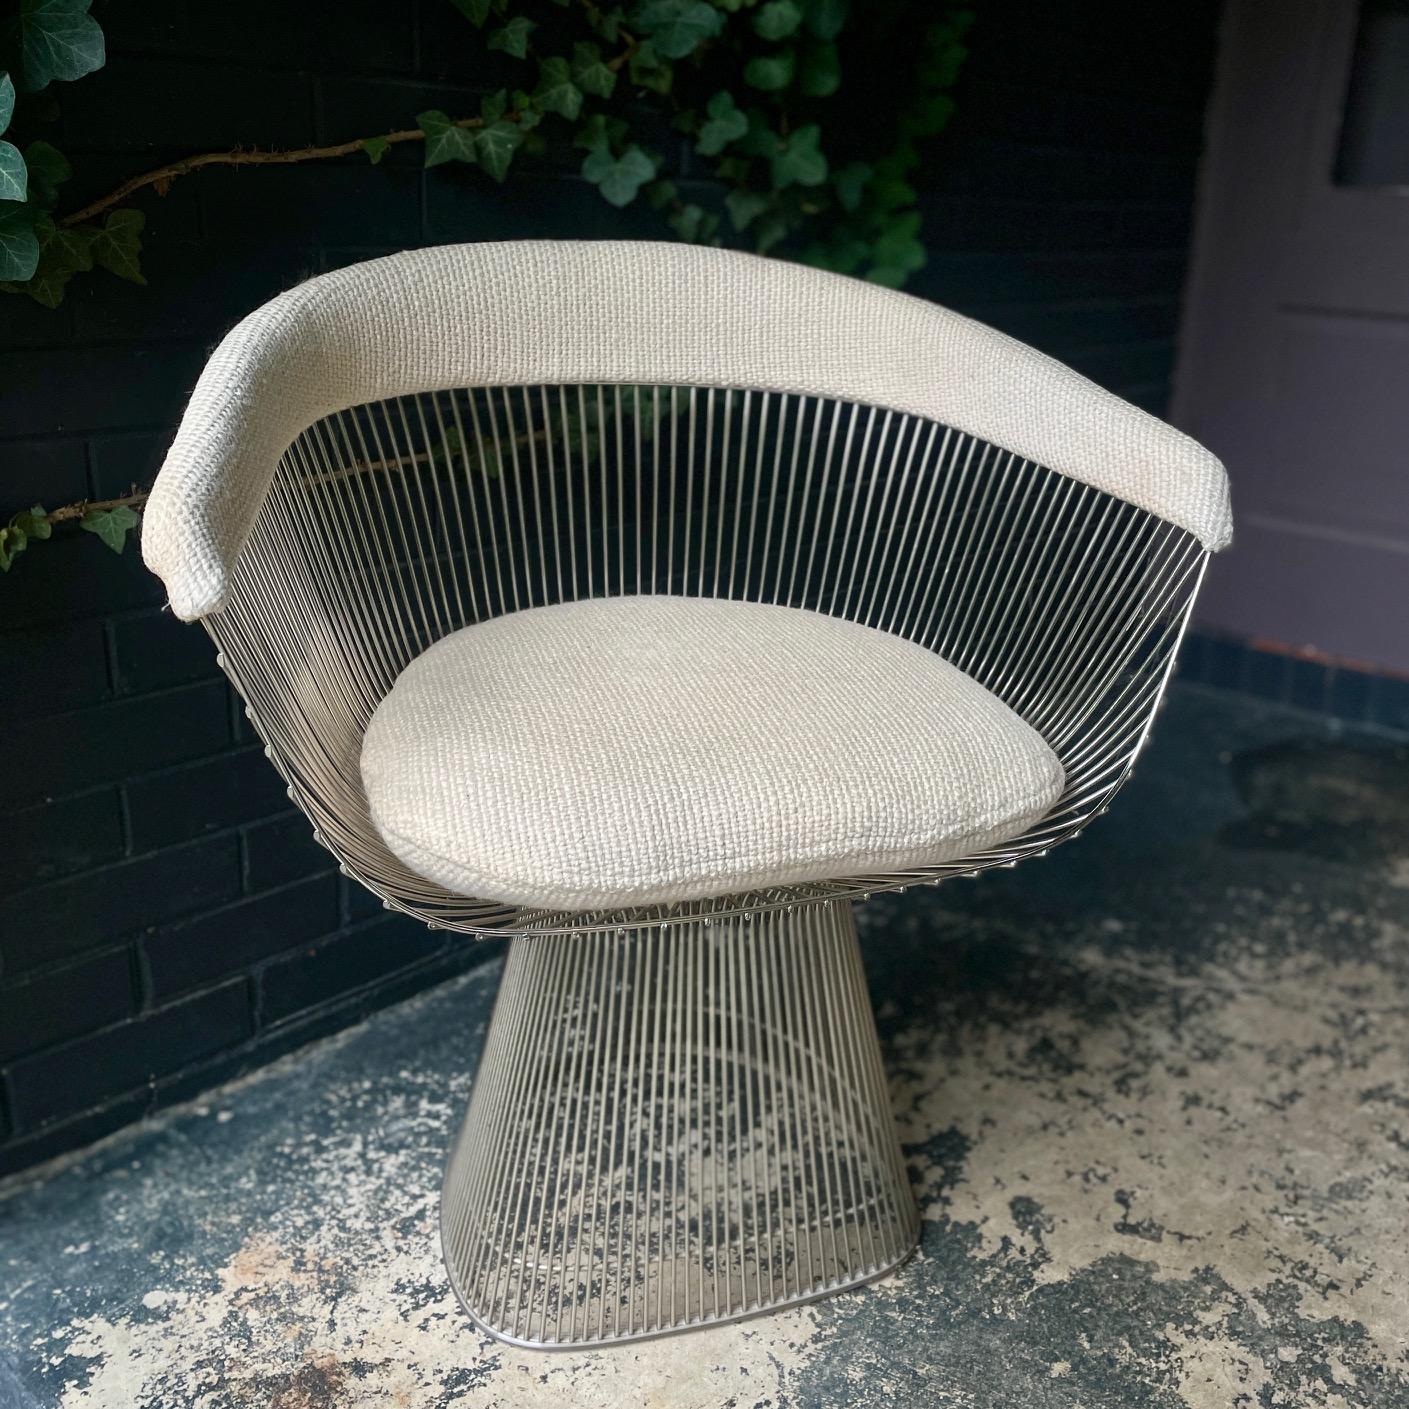 La chaise de toilette glamour par excellence.  Fauteuil en fil de fer très sculptural conçu par Warren Platner et produit par Knoll dans les années 1970.  Tissu d'origine knoll knobby en laine mélangée biege. Bon état vintage.

L 27,5 x P 20,5 x H